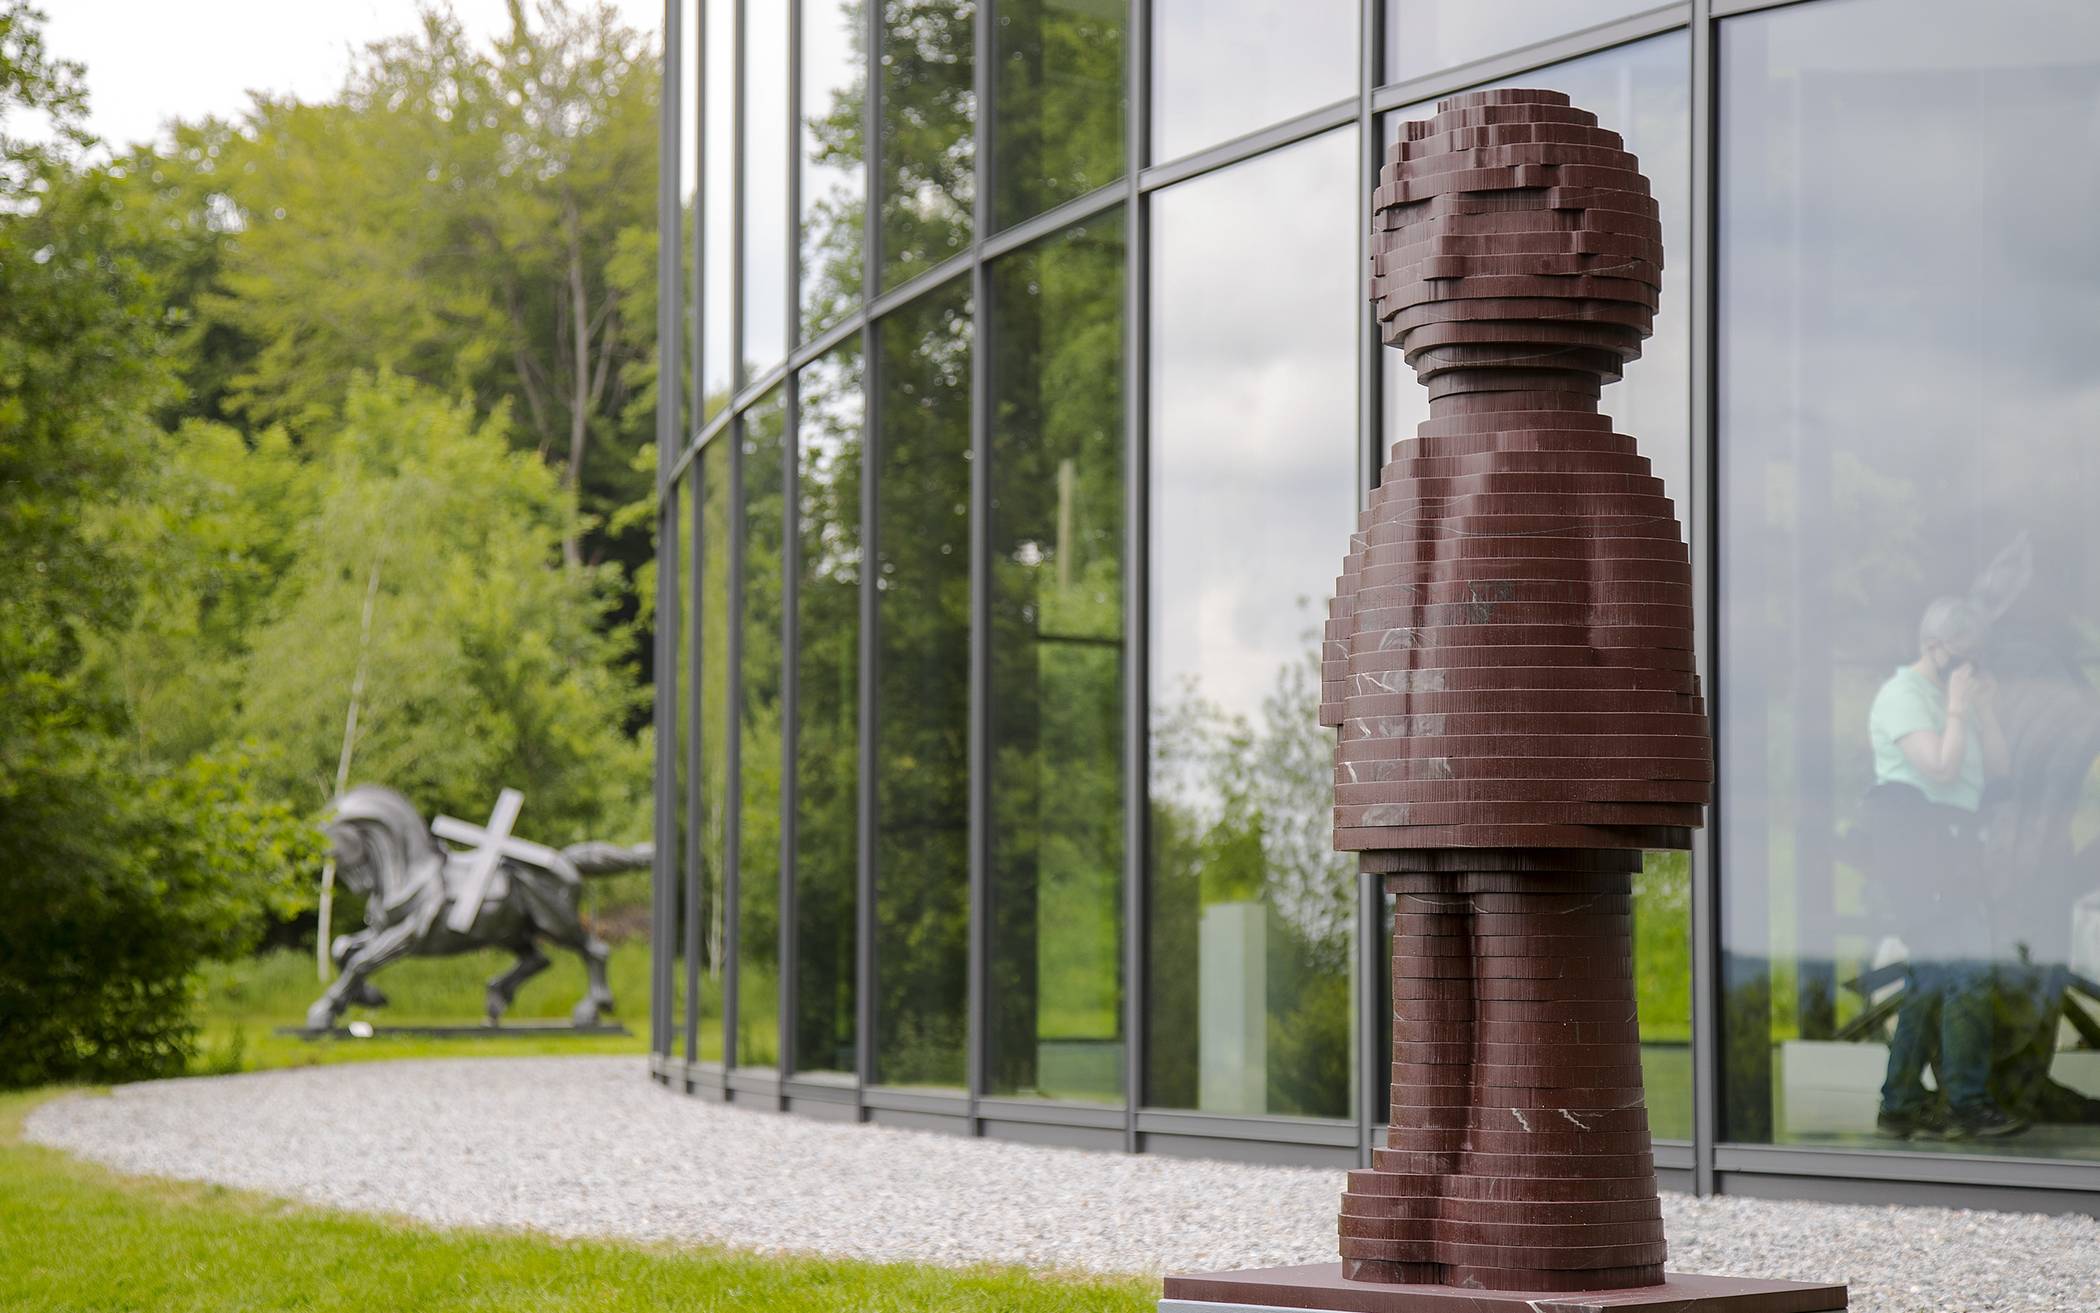  Wer Eckehard Lowischs "Engels 2020 Skulptur" in Wuppertal begegnet, kann sie gerne fotografieren und das Bild unter dem Hashtag #engelstour2020 posten. 